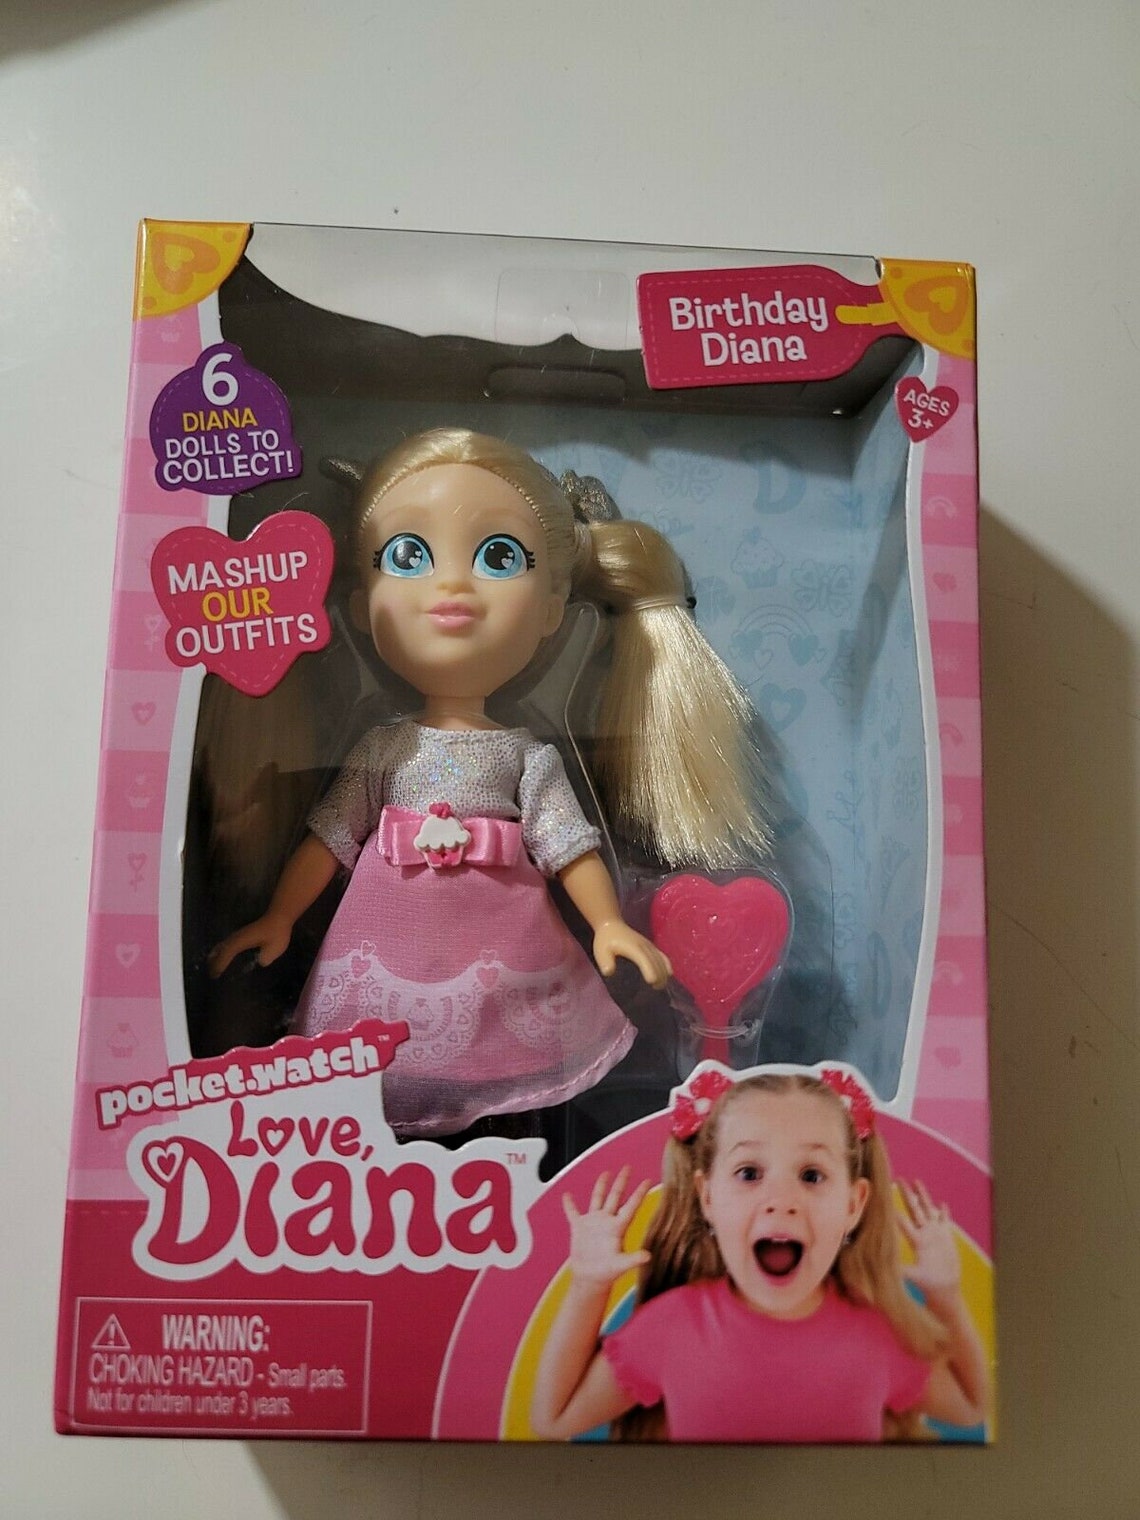 Love Diana Mashups Birthday Diana 6 Doll and Brush | Etsy